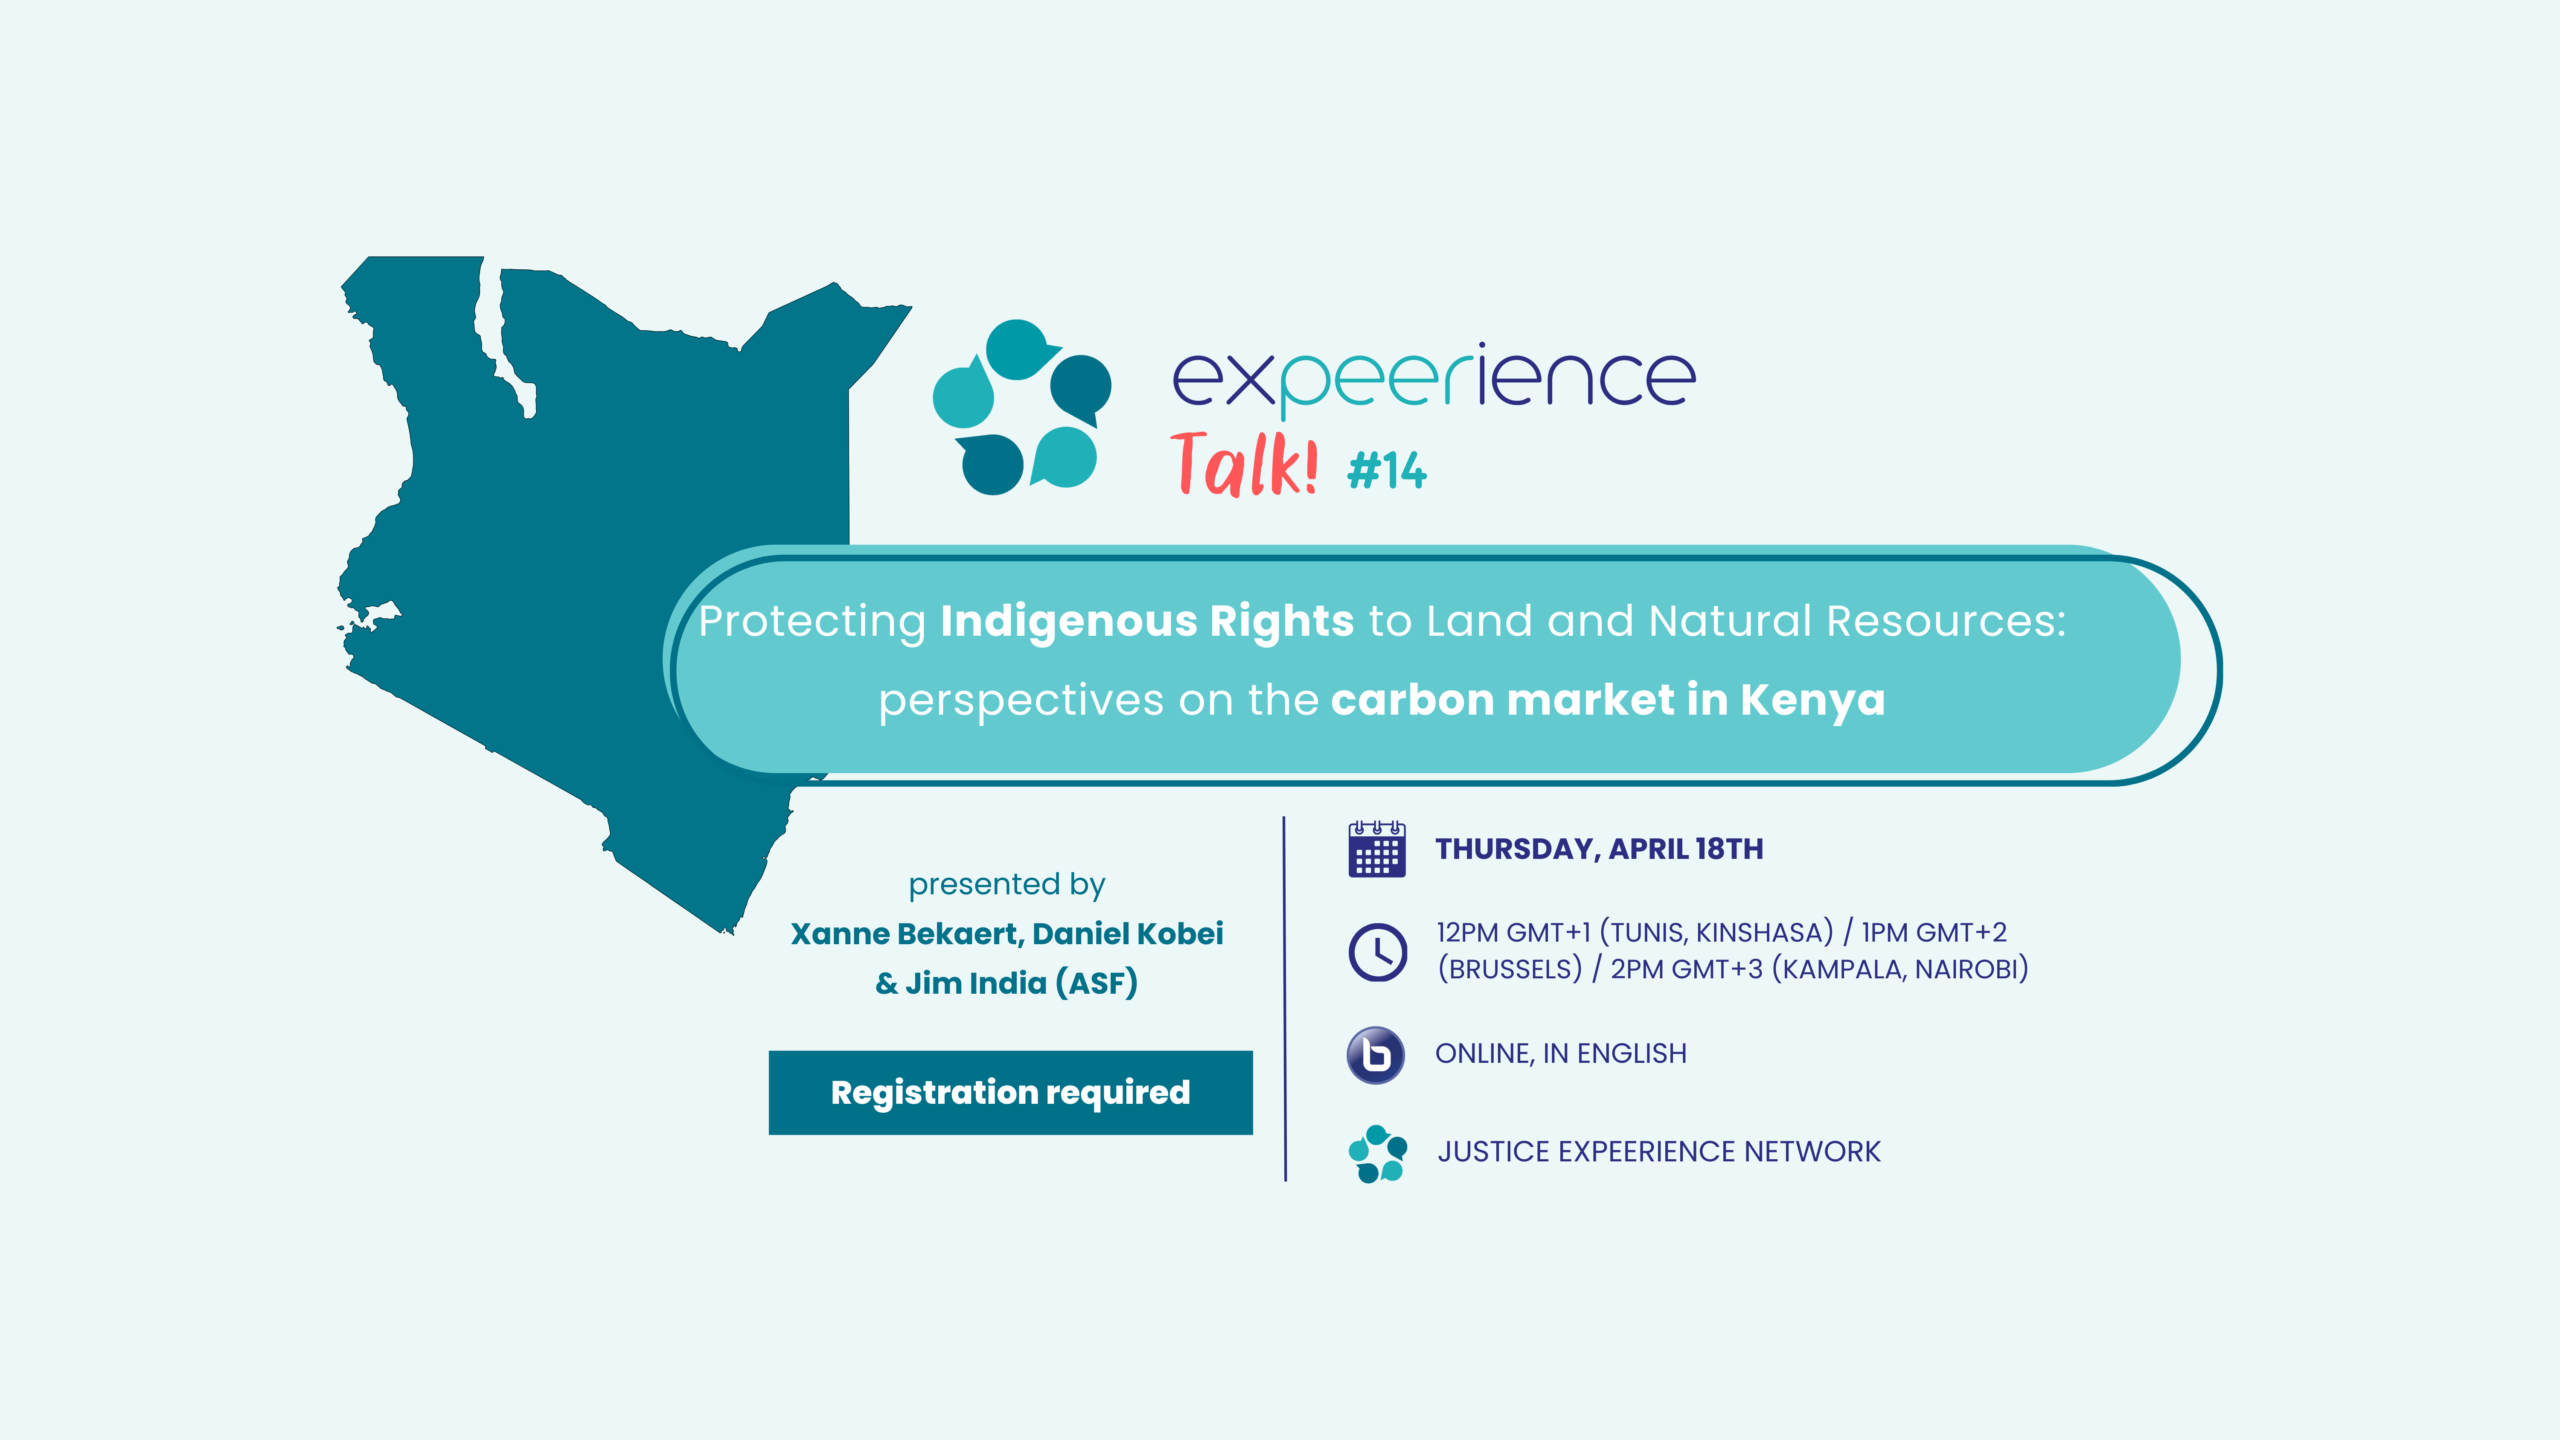 ExPEERience Talk #14 – Hoe kunnen we het recht op land en natuurlijke hulpbronnen van inheemse volkeren beschermen? Analyse van de koolstofindustrie in Kenia